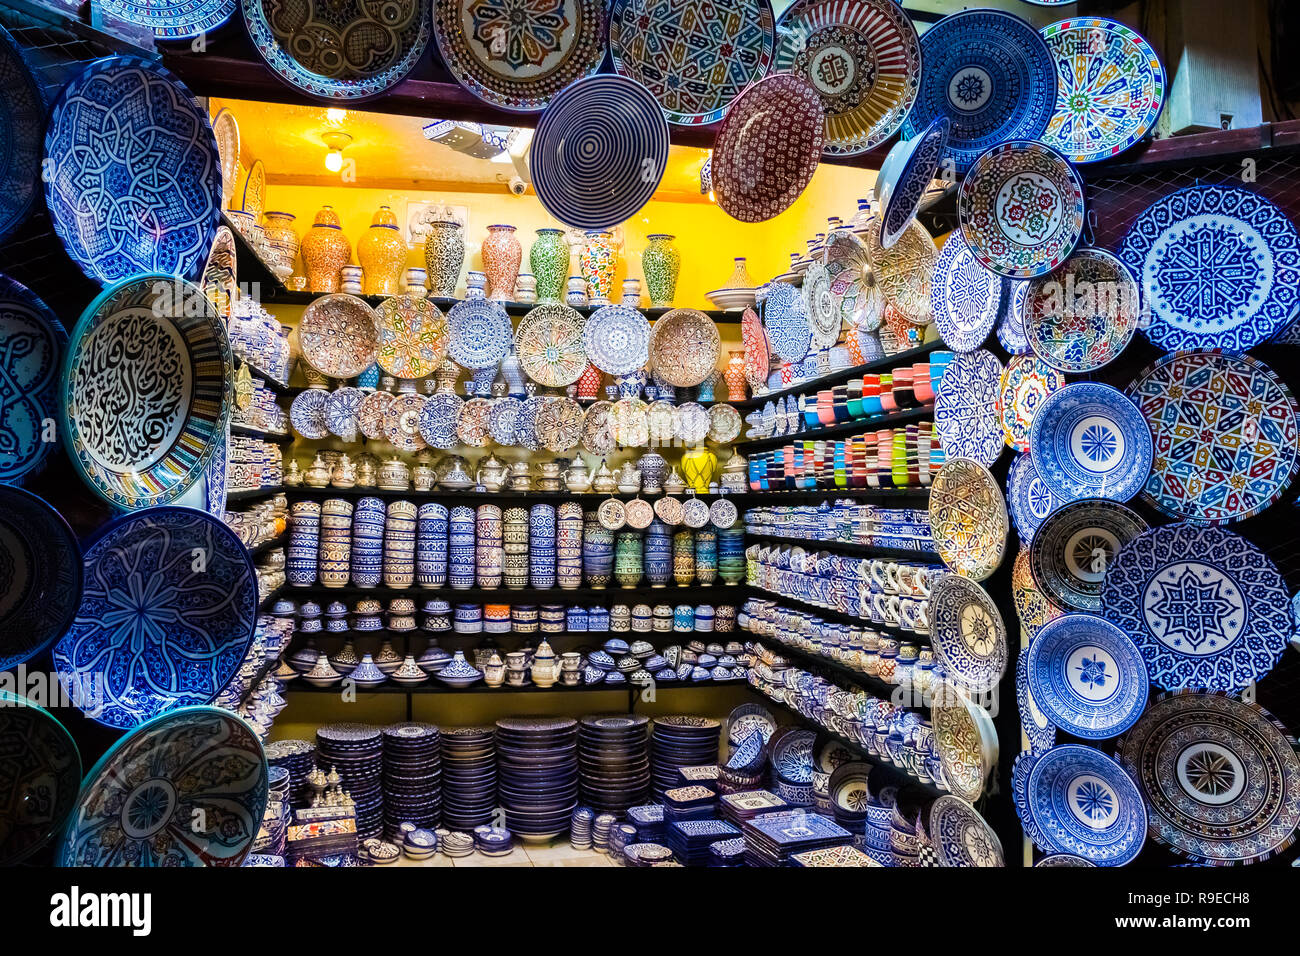 Magasin d'artisanat coloré avec la céramique d'art sur un marché marocain traditionnel dans la médina de Fès, Maroc, Afrique Banque D'Images